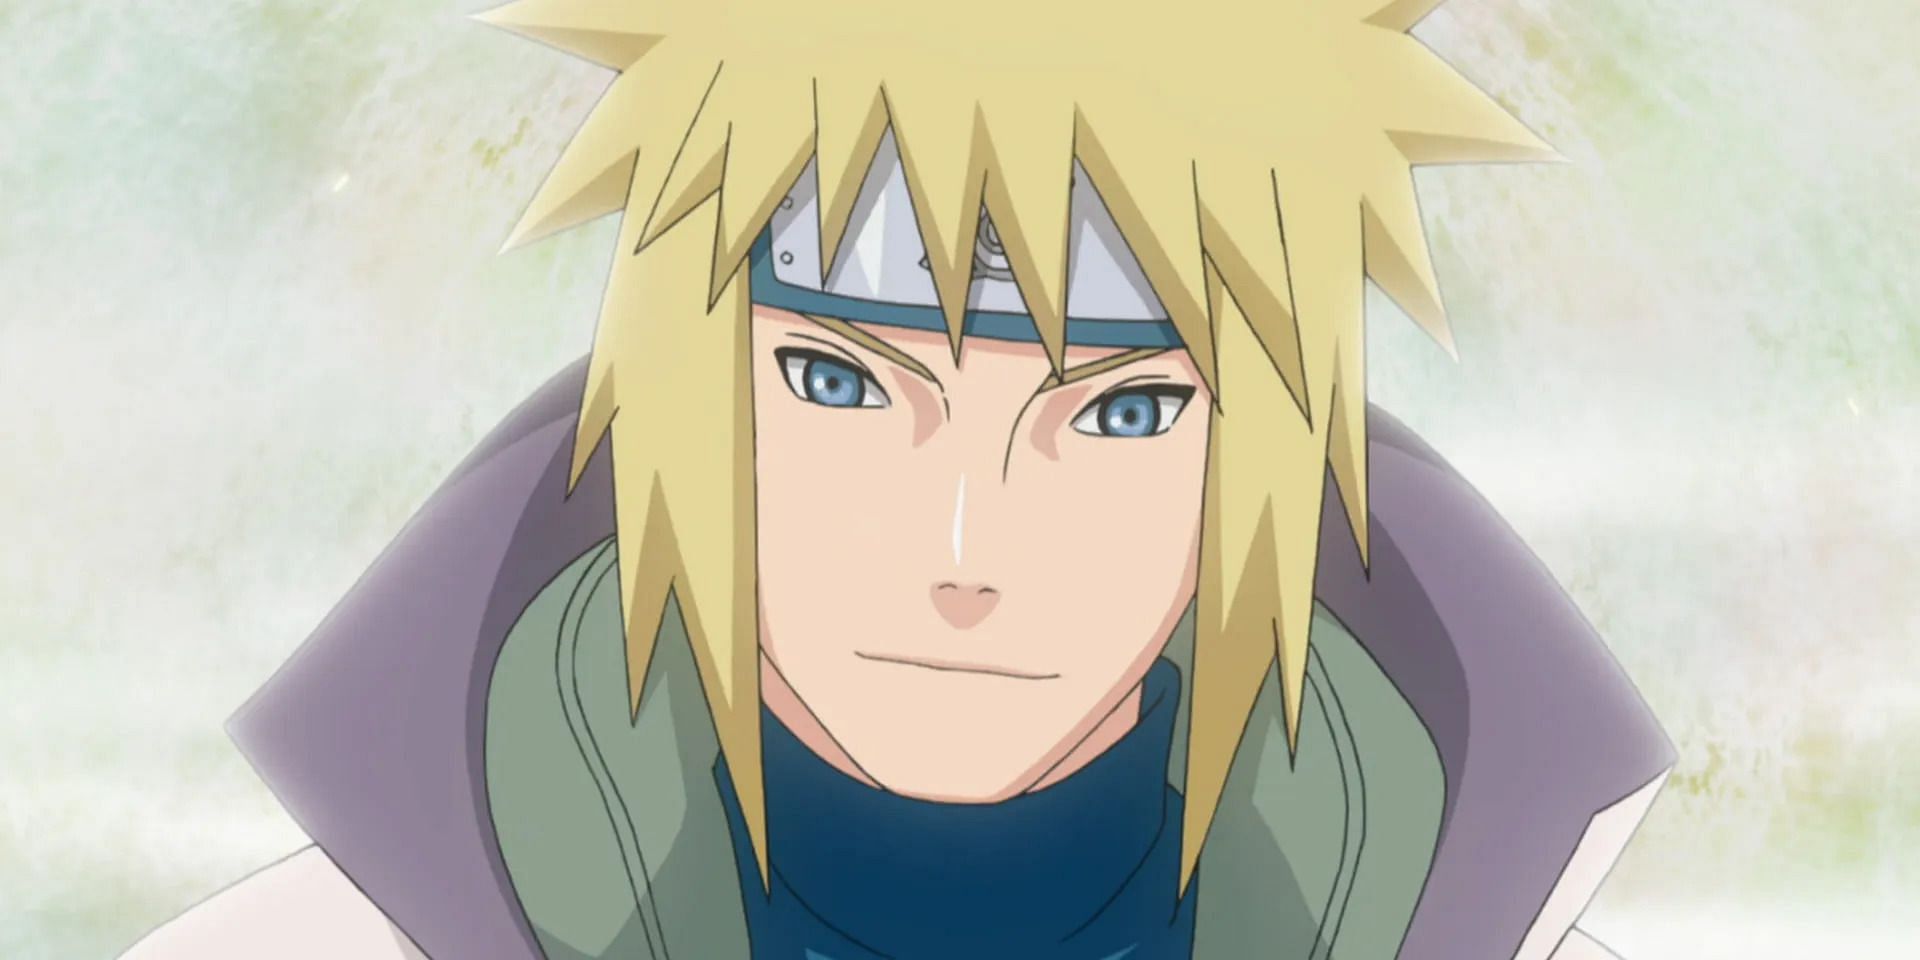 Minato Namikaze as seen in the Naruto: Shippuden anime (Image via Studio Pierrot)